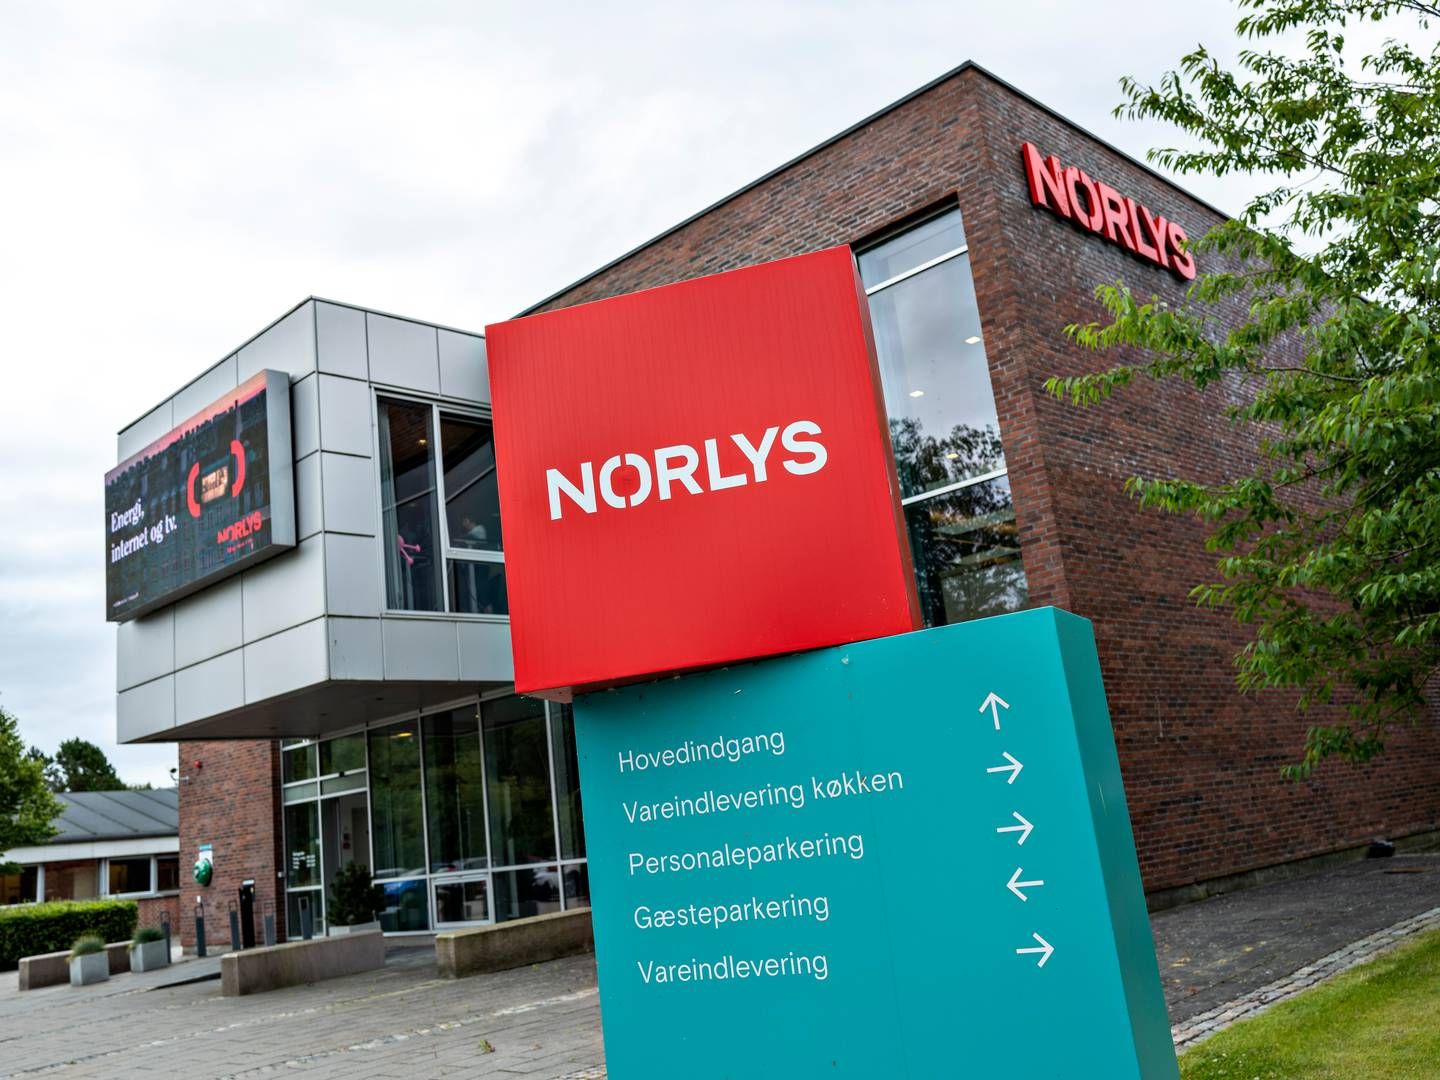 Norlys leverer energi, internet og tv til danskerne. Bliver handlen med teleselskabet Telia godkendt, vil selskabet også kunne udbyde mobildækning til danskerne. | Foto: Henning Bagger